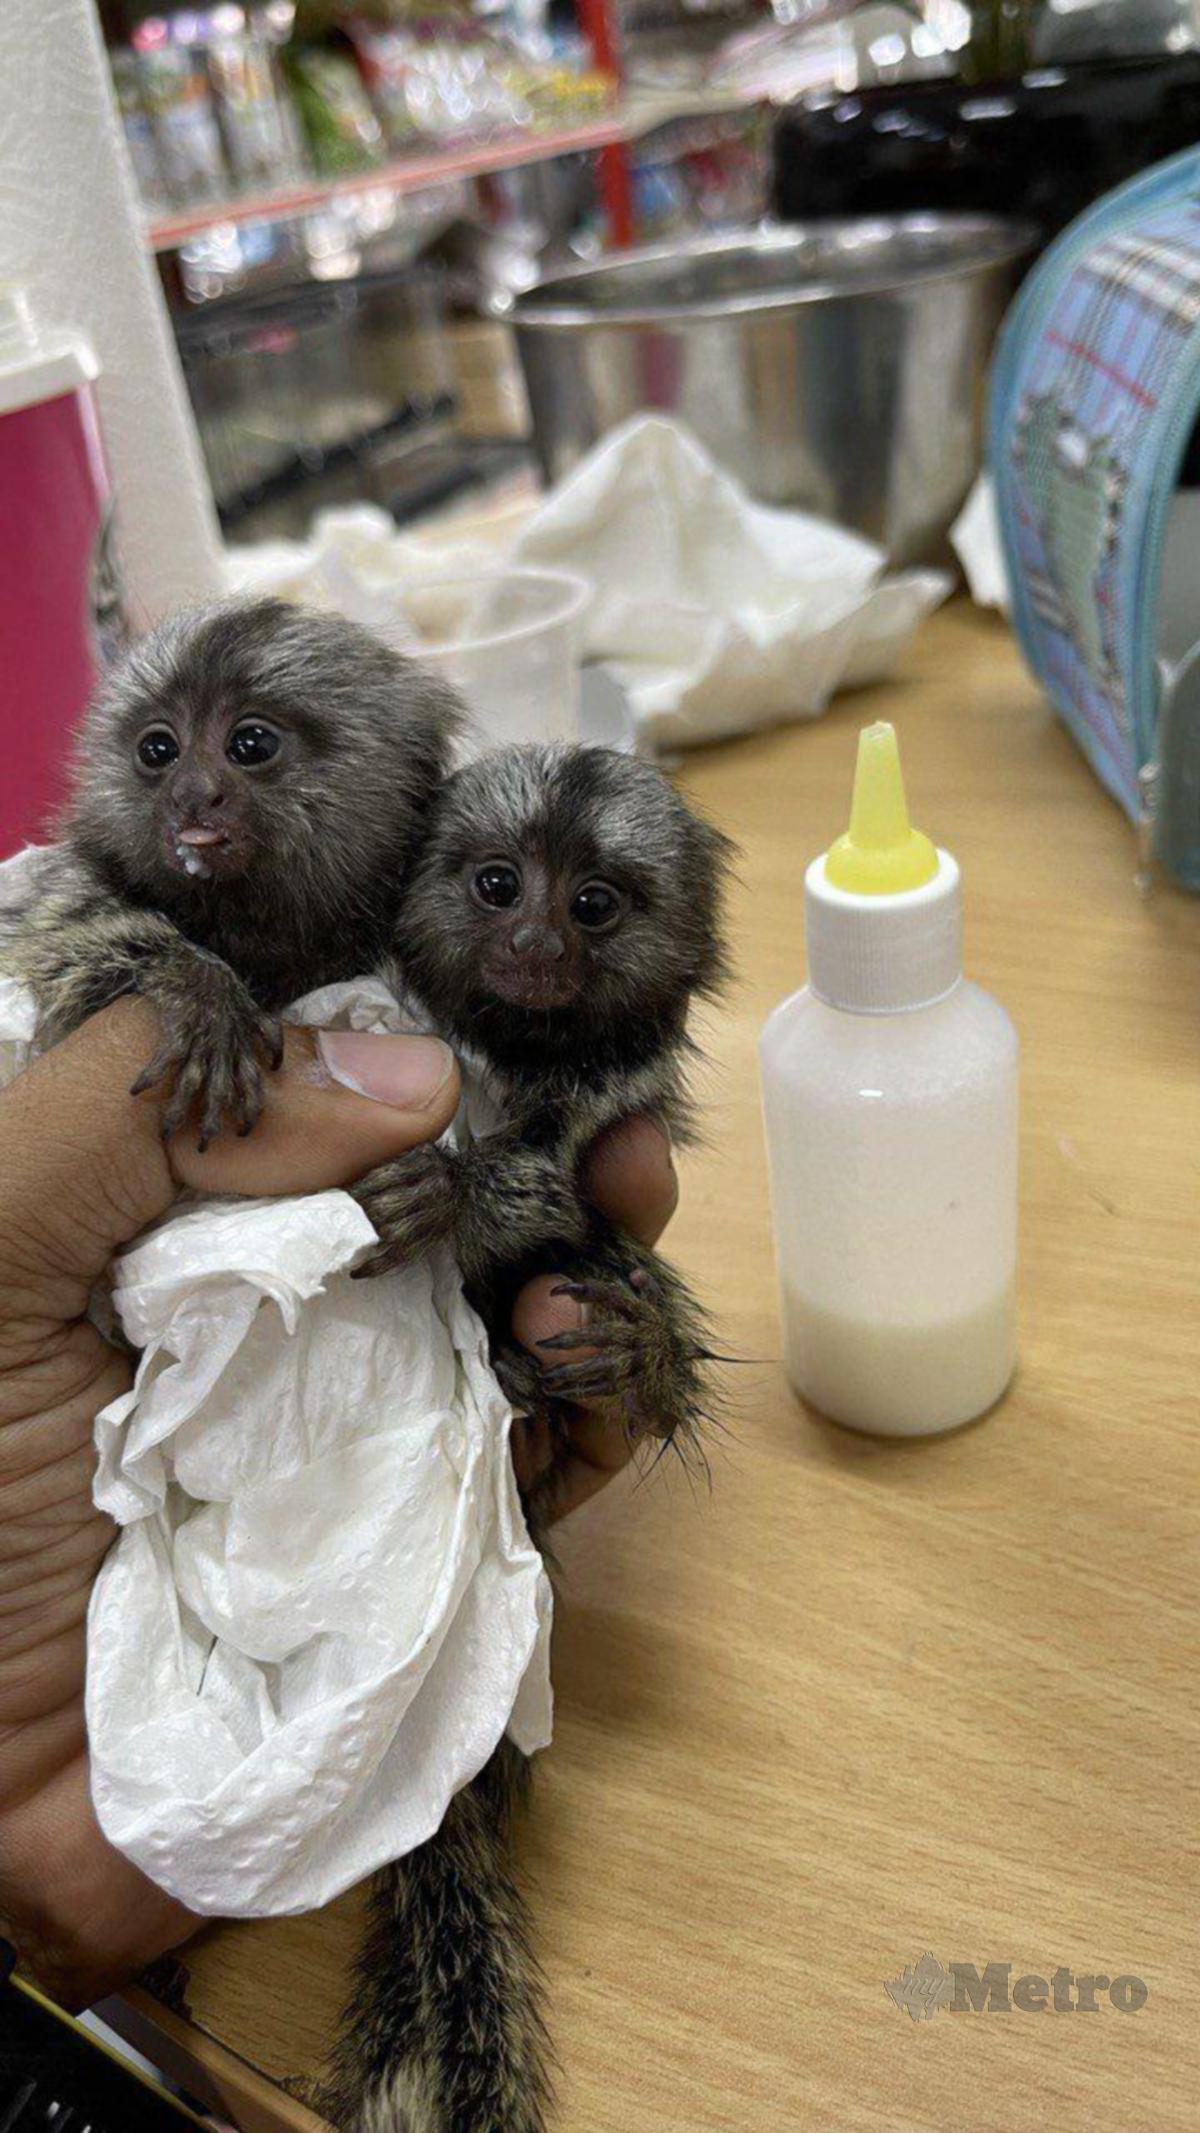 SEPASANG anak monyet terkecil dunia.